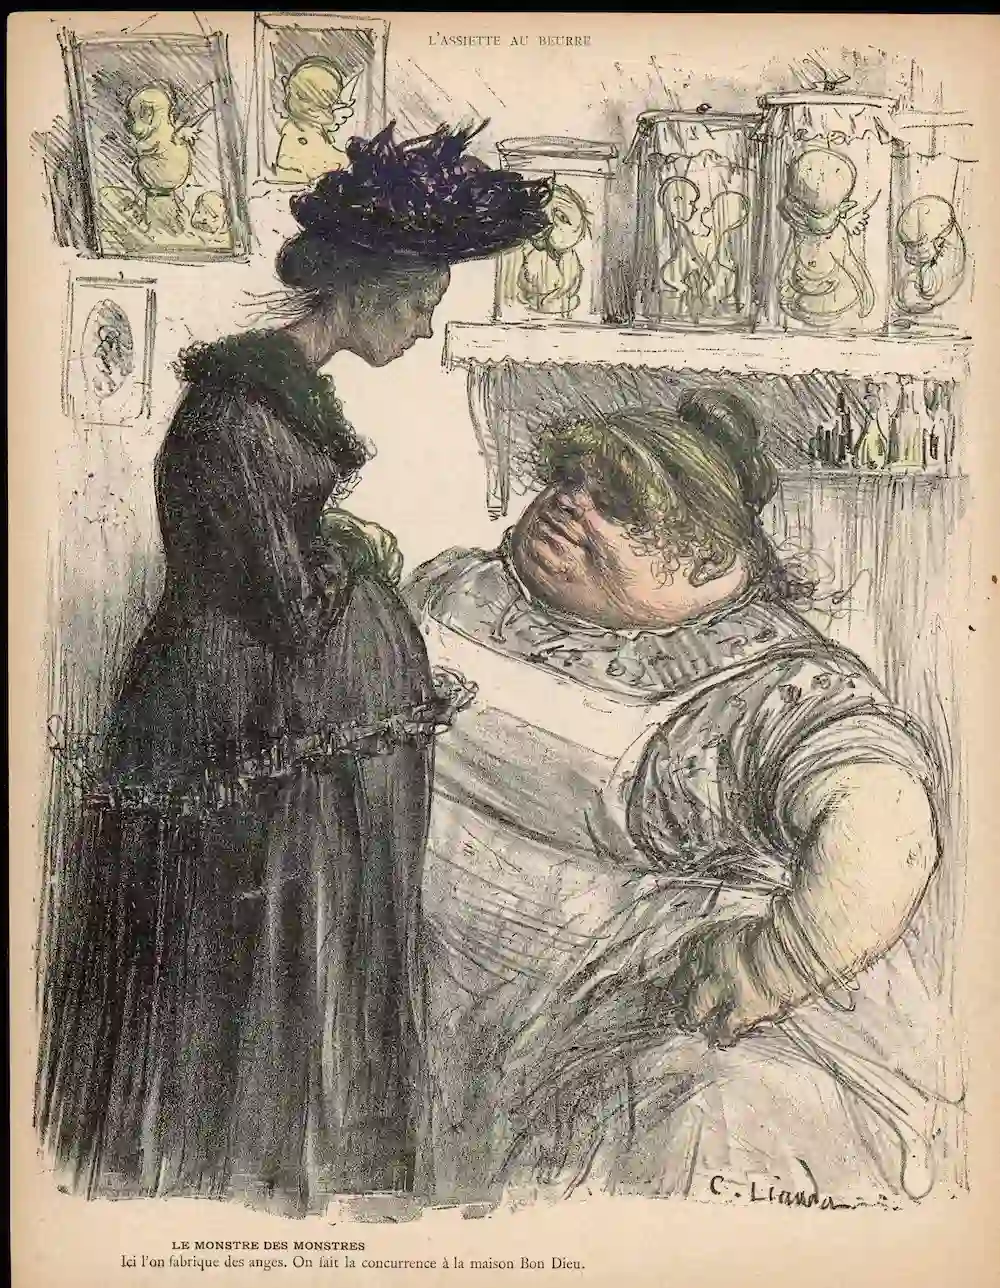 Imagen de 1902 en un periódico francés de una mujer en busca de un aborto tardío